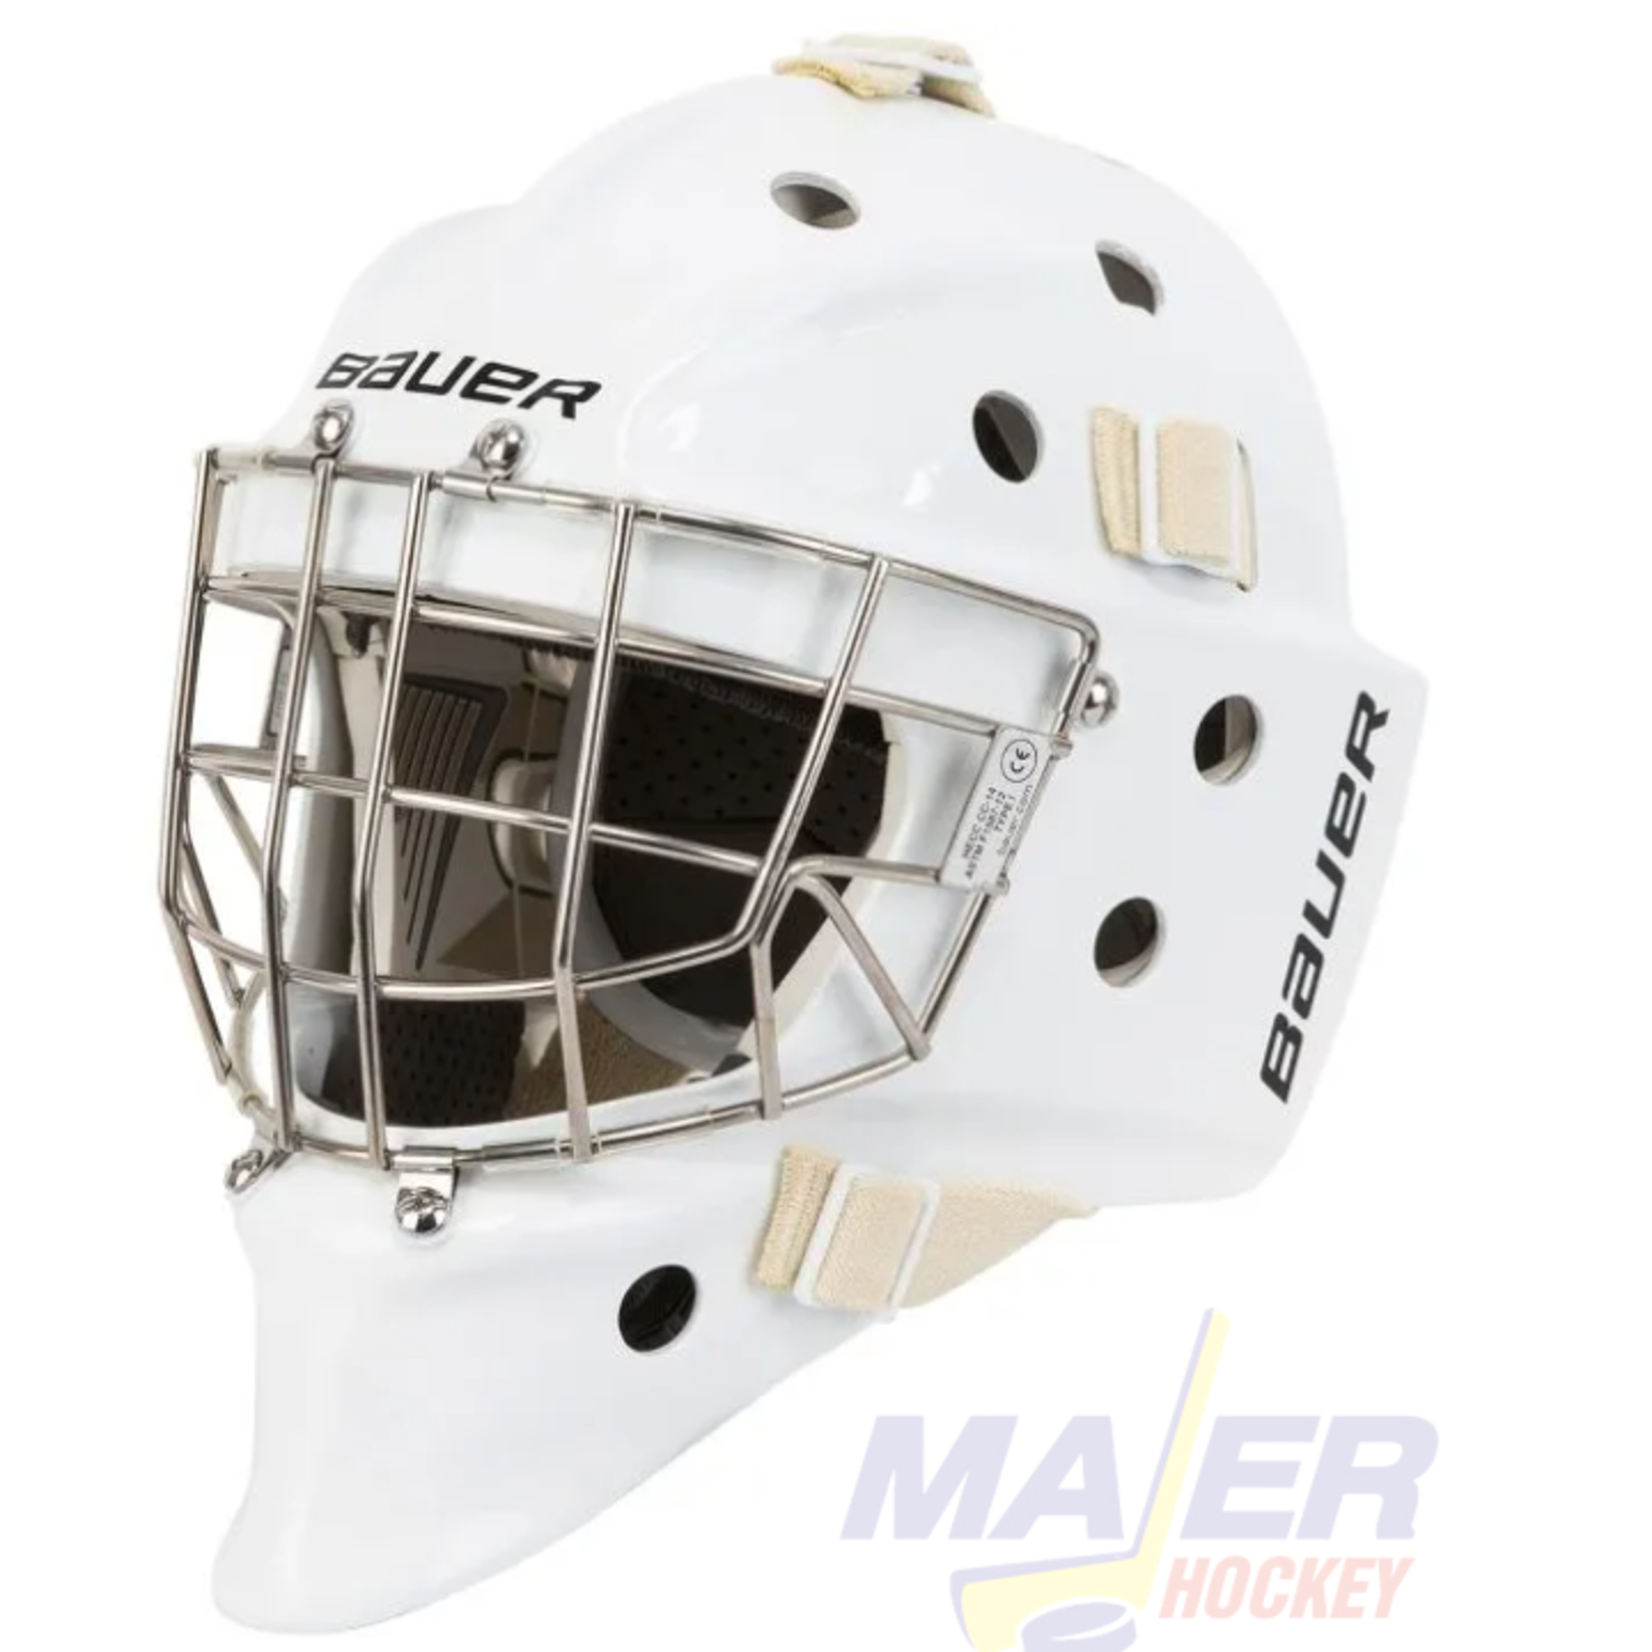 Bauer 960 Sr Goalie Mask